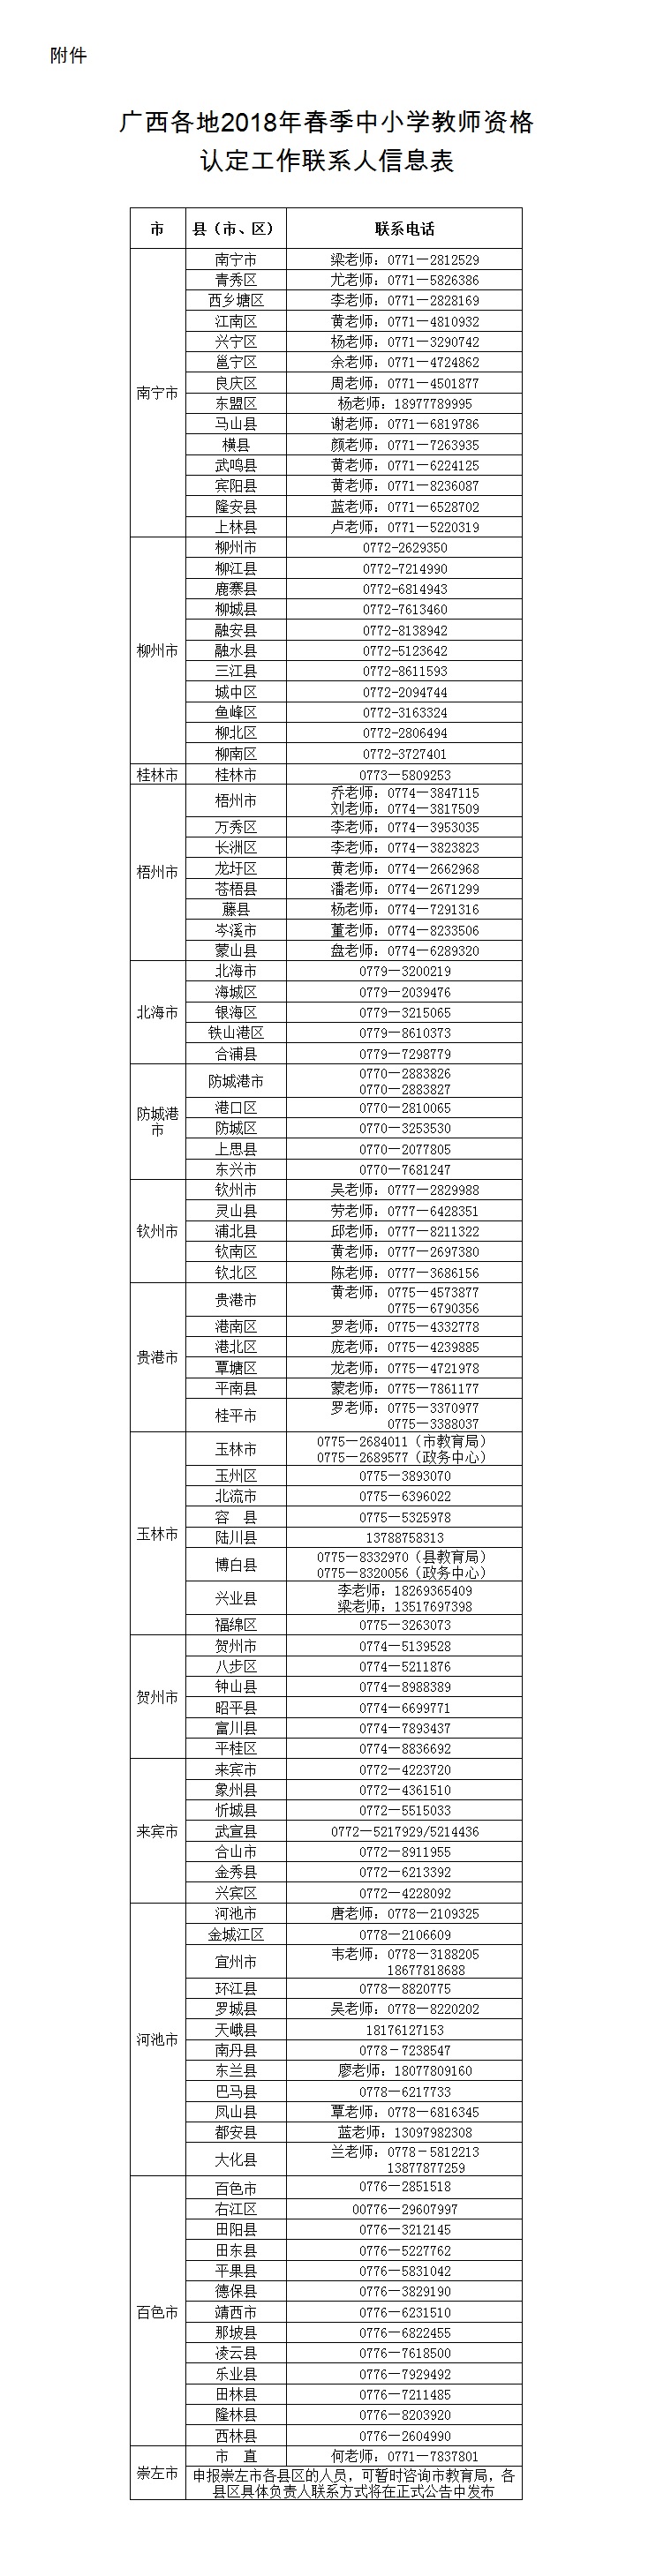 广西2018年春季中小学教师资格认定预公告